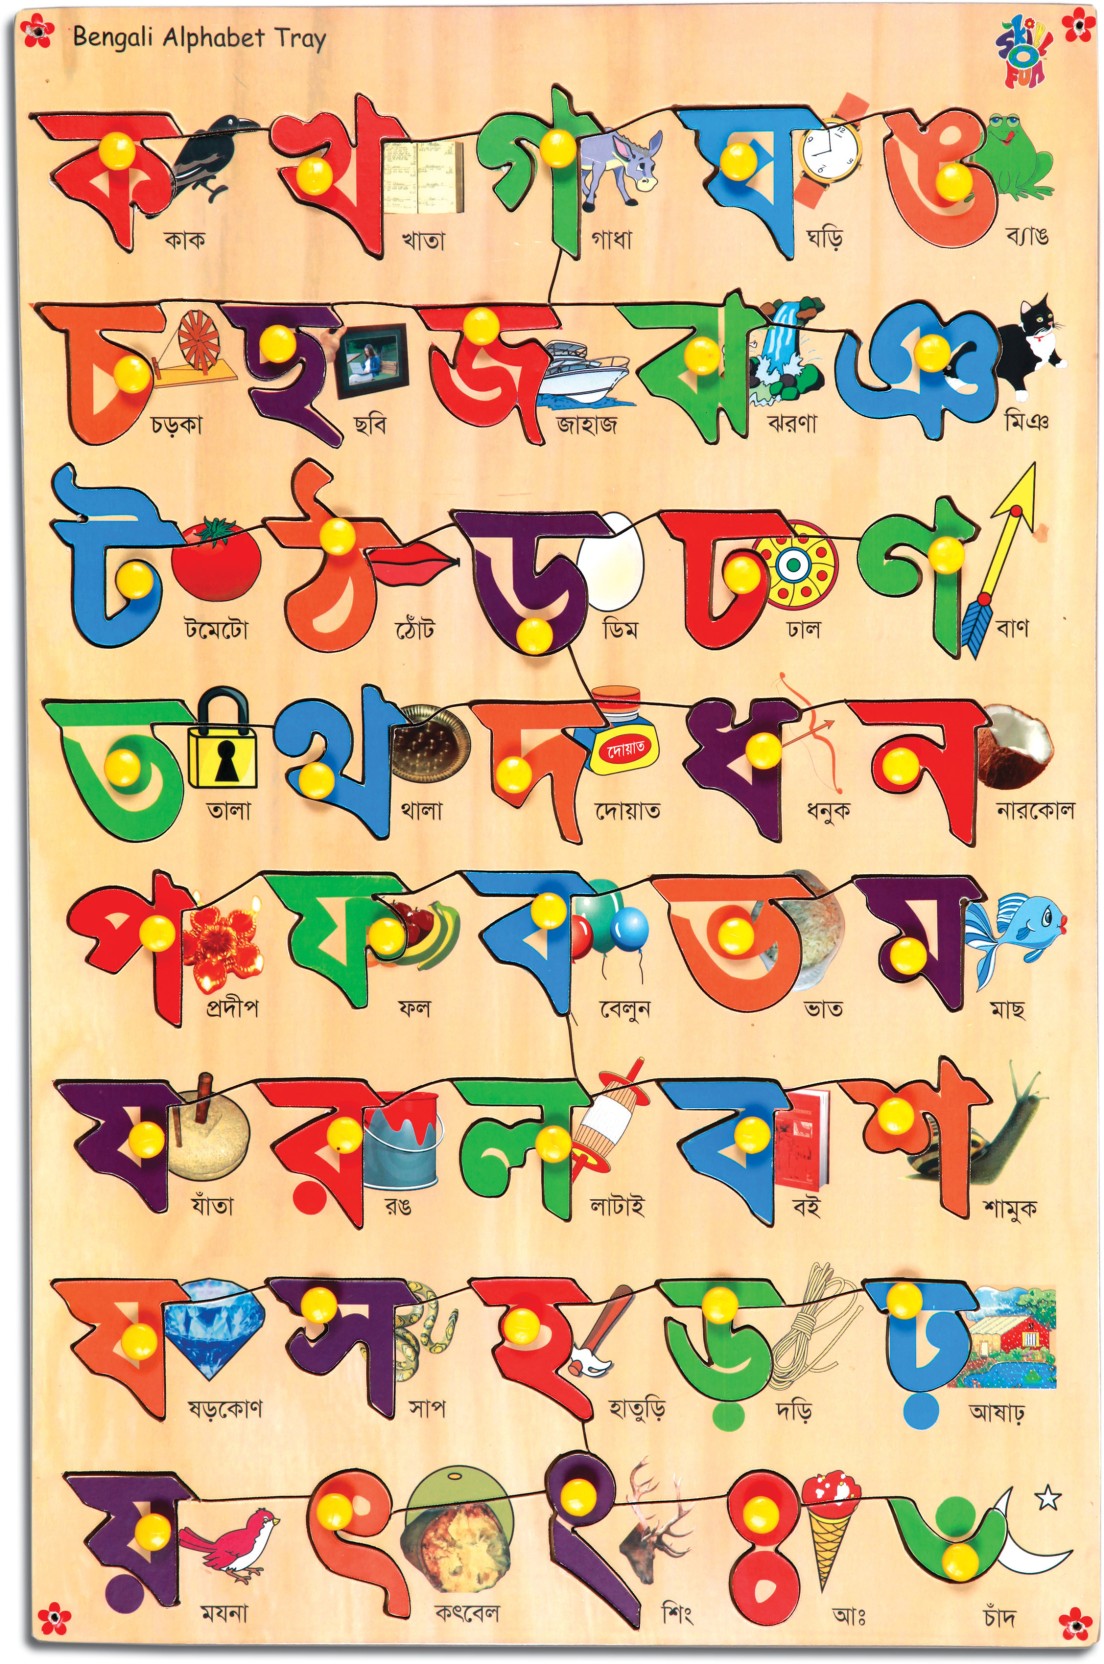 bengali alphabet how to write